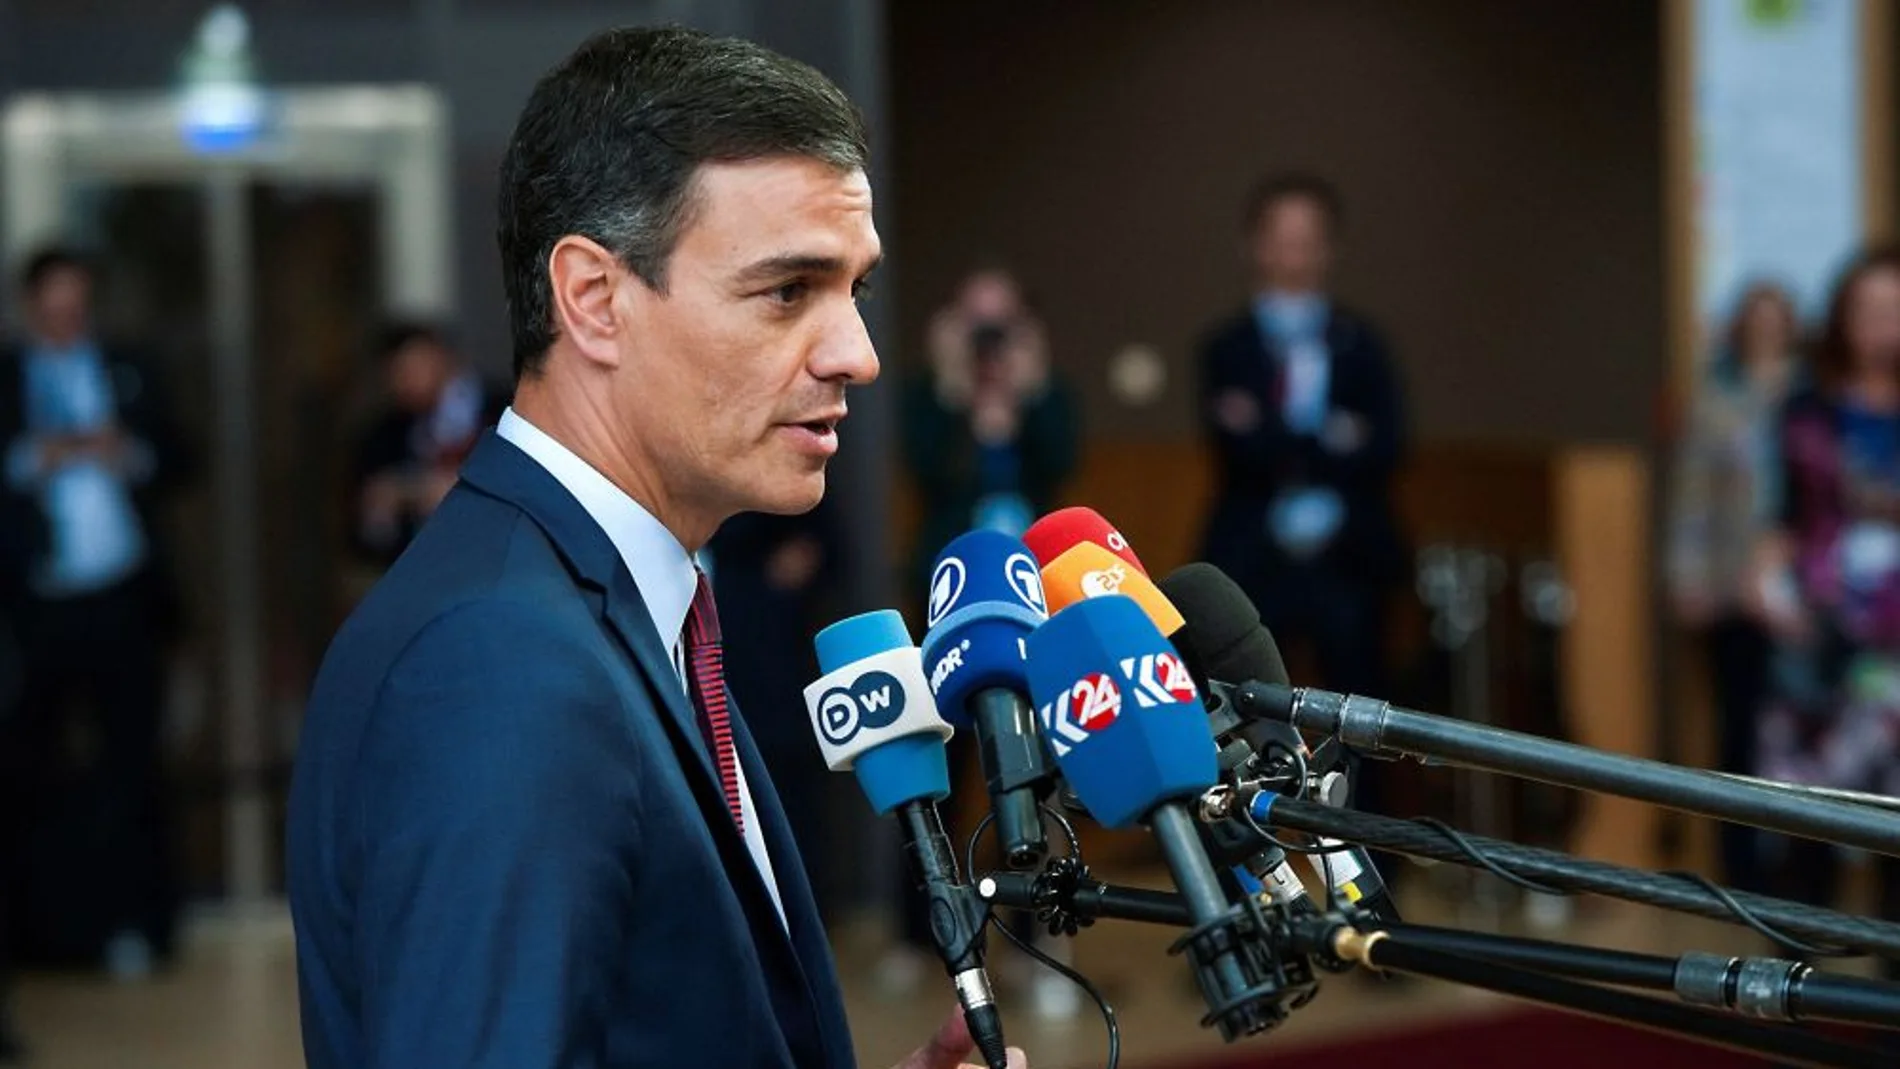 laSexta Noticias 20:00 (28-05-19) Pedro Sánchez defiende "con más convicción" gobernar solo tras los resultados electorales del 26M